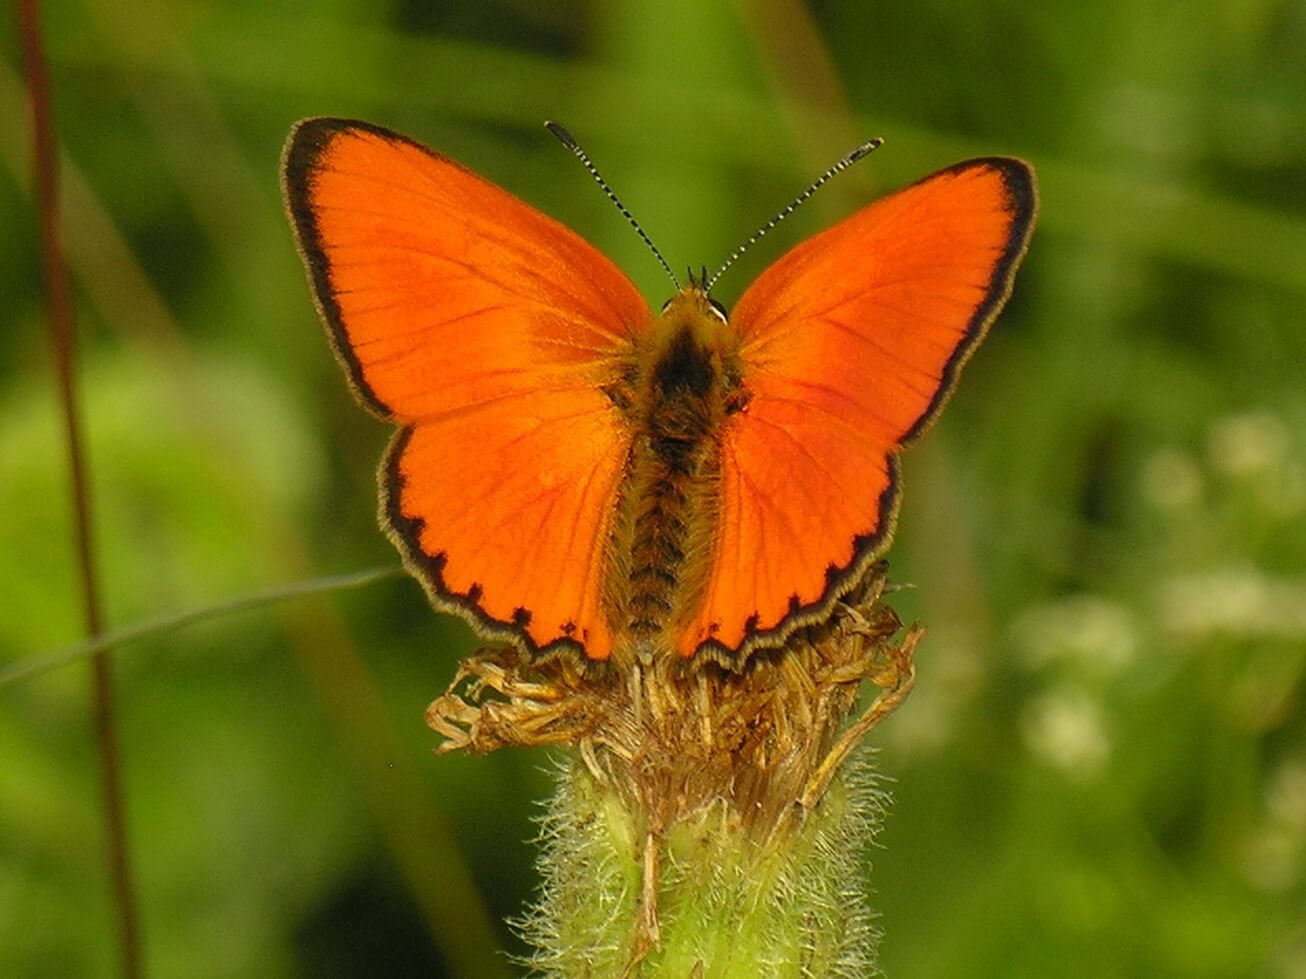 Spécimen de Lycaena virgaureae, aux ailes orange, appartenant à la famille des Lycaenidae.